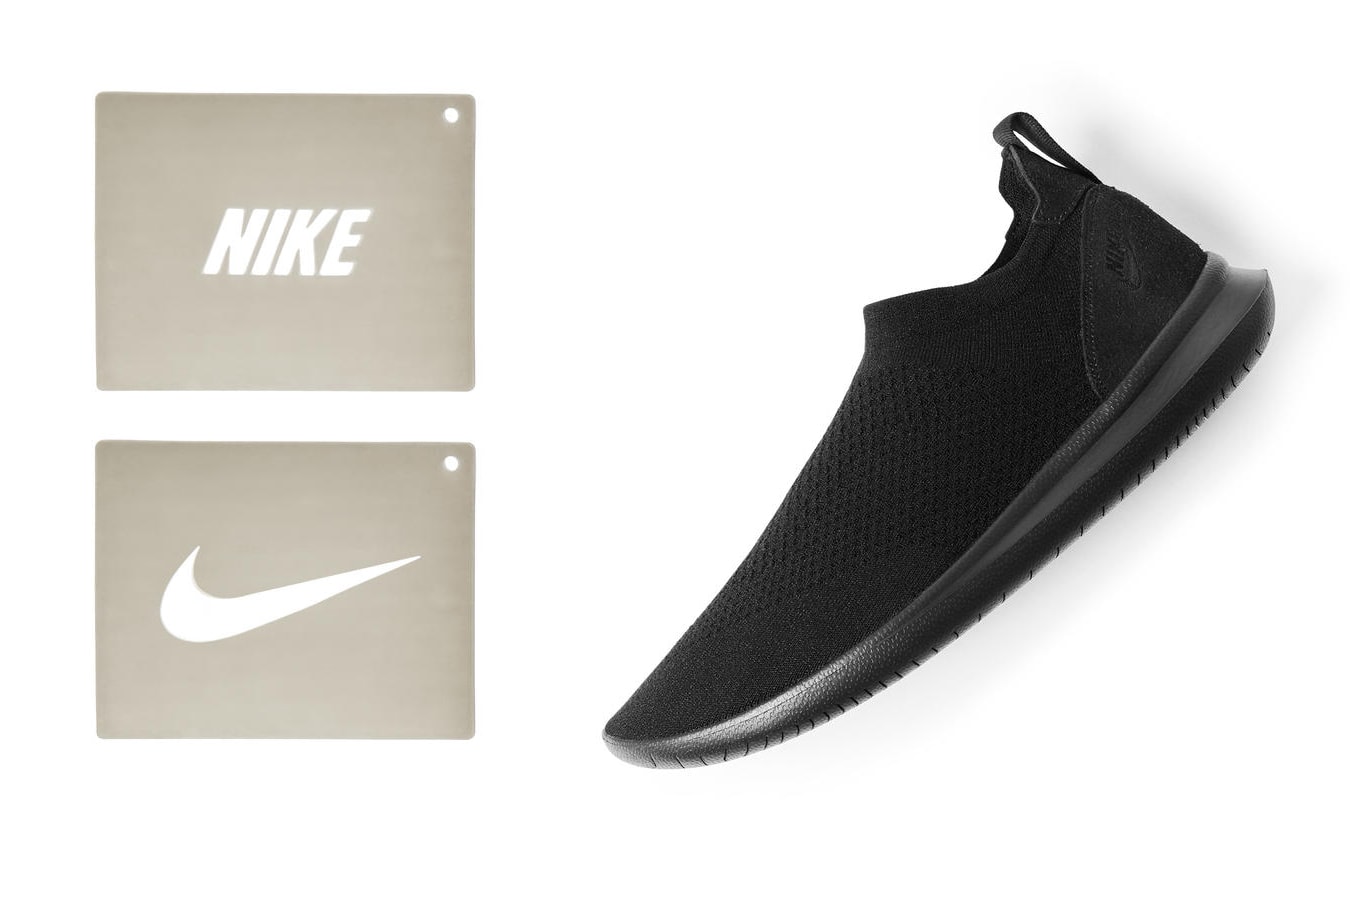 創意大發 - Nike 推出用家個性化鞋款 Gakou Flyknit